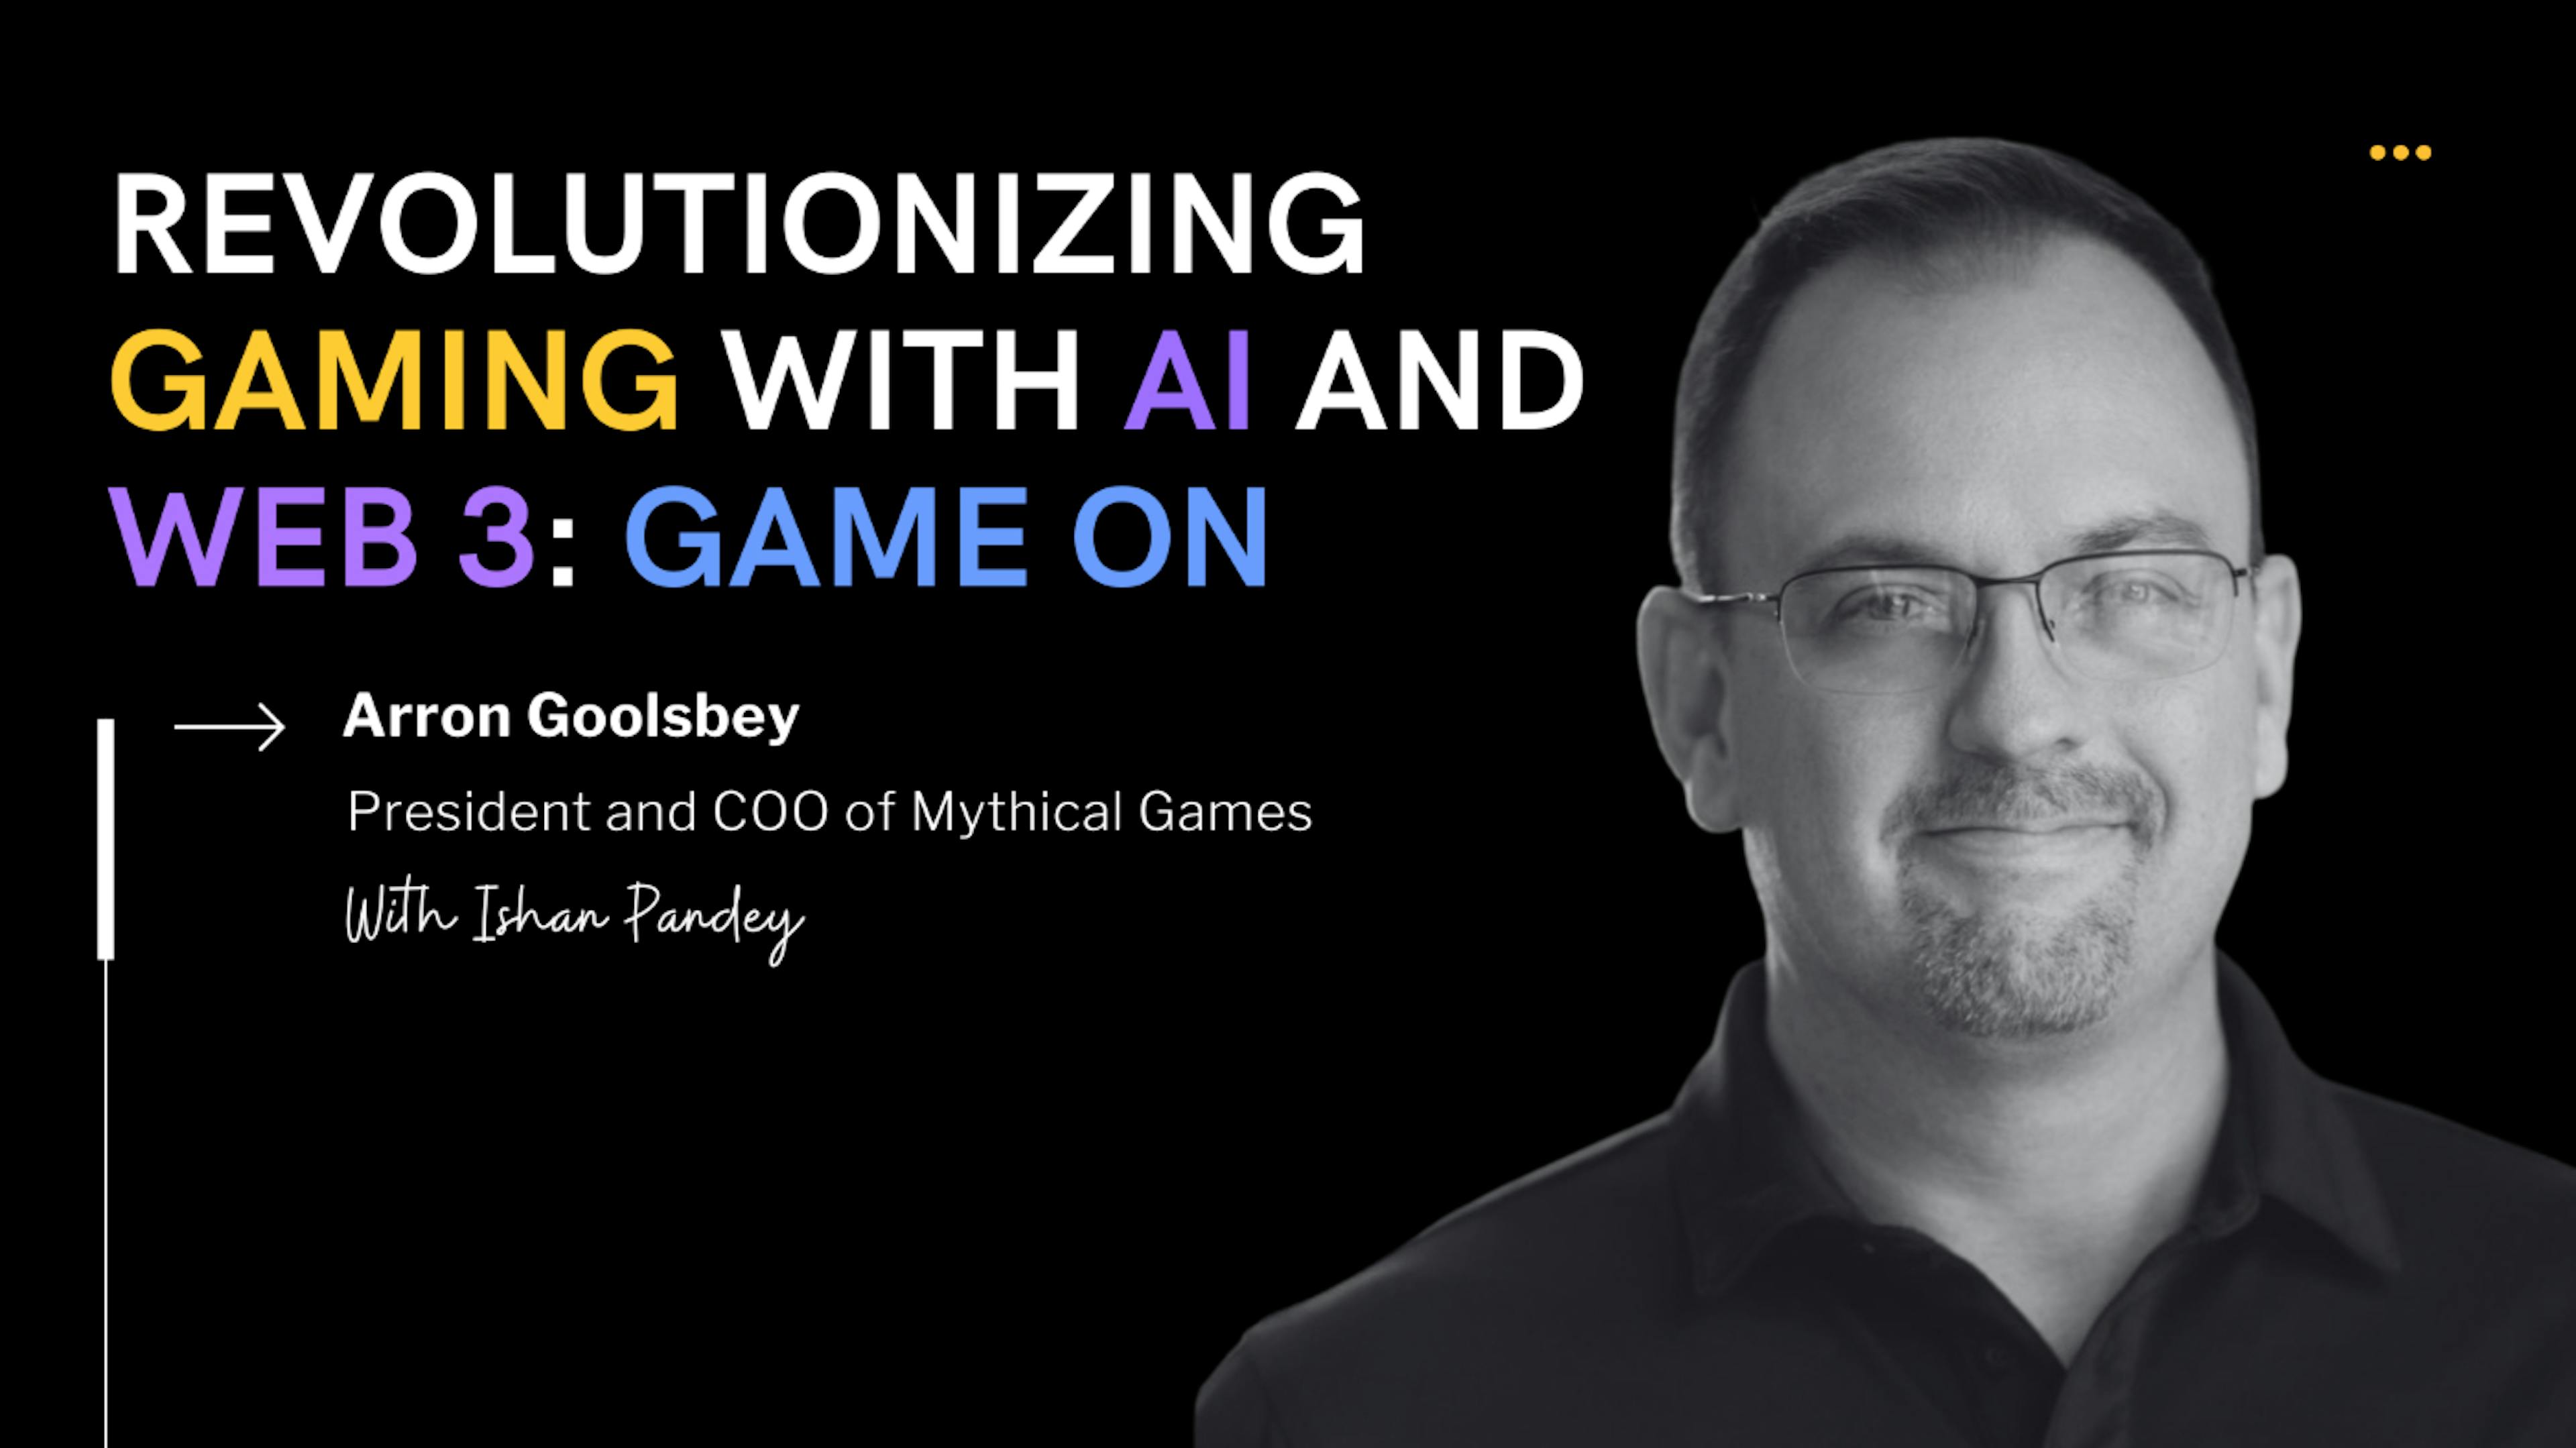 featured image - Arron Goolsbey, Mythical Games'te Yapay Zeka ve Blockchain ile Oyunun Geleceğini Konuşuyor